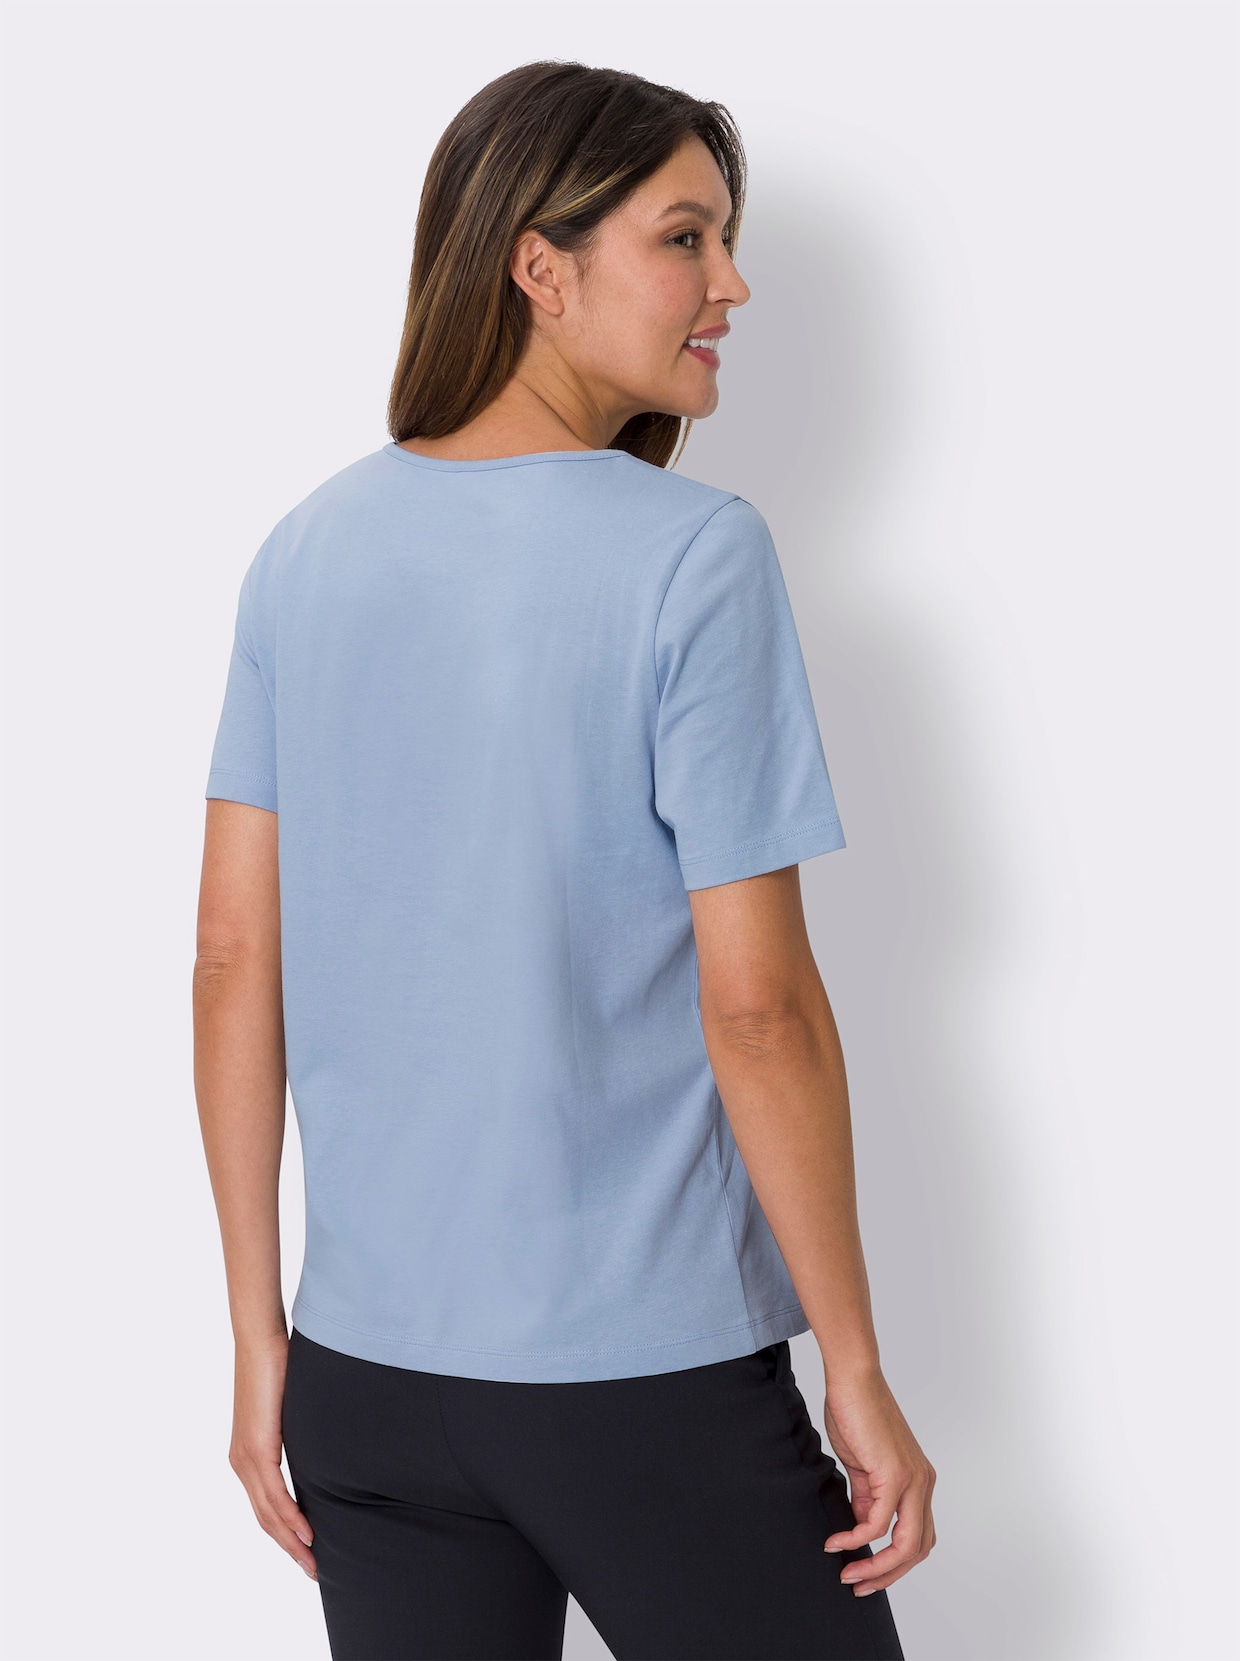 Tričko s krátkým rukávem - modrá-antracitová